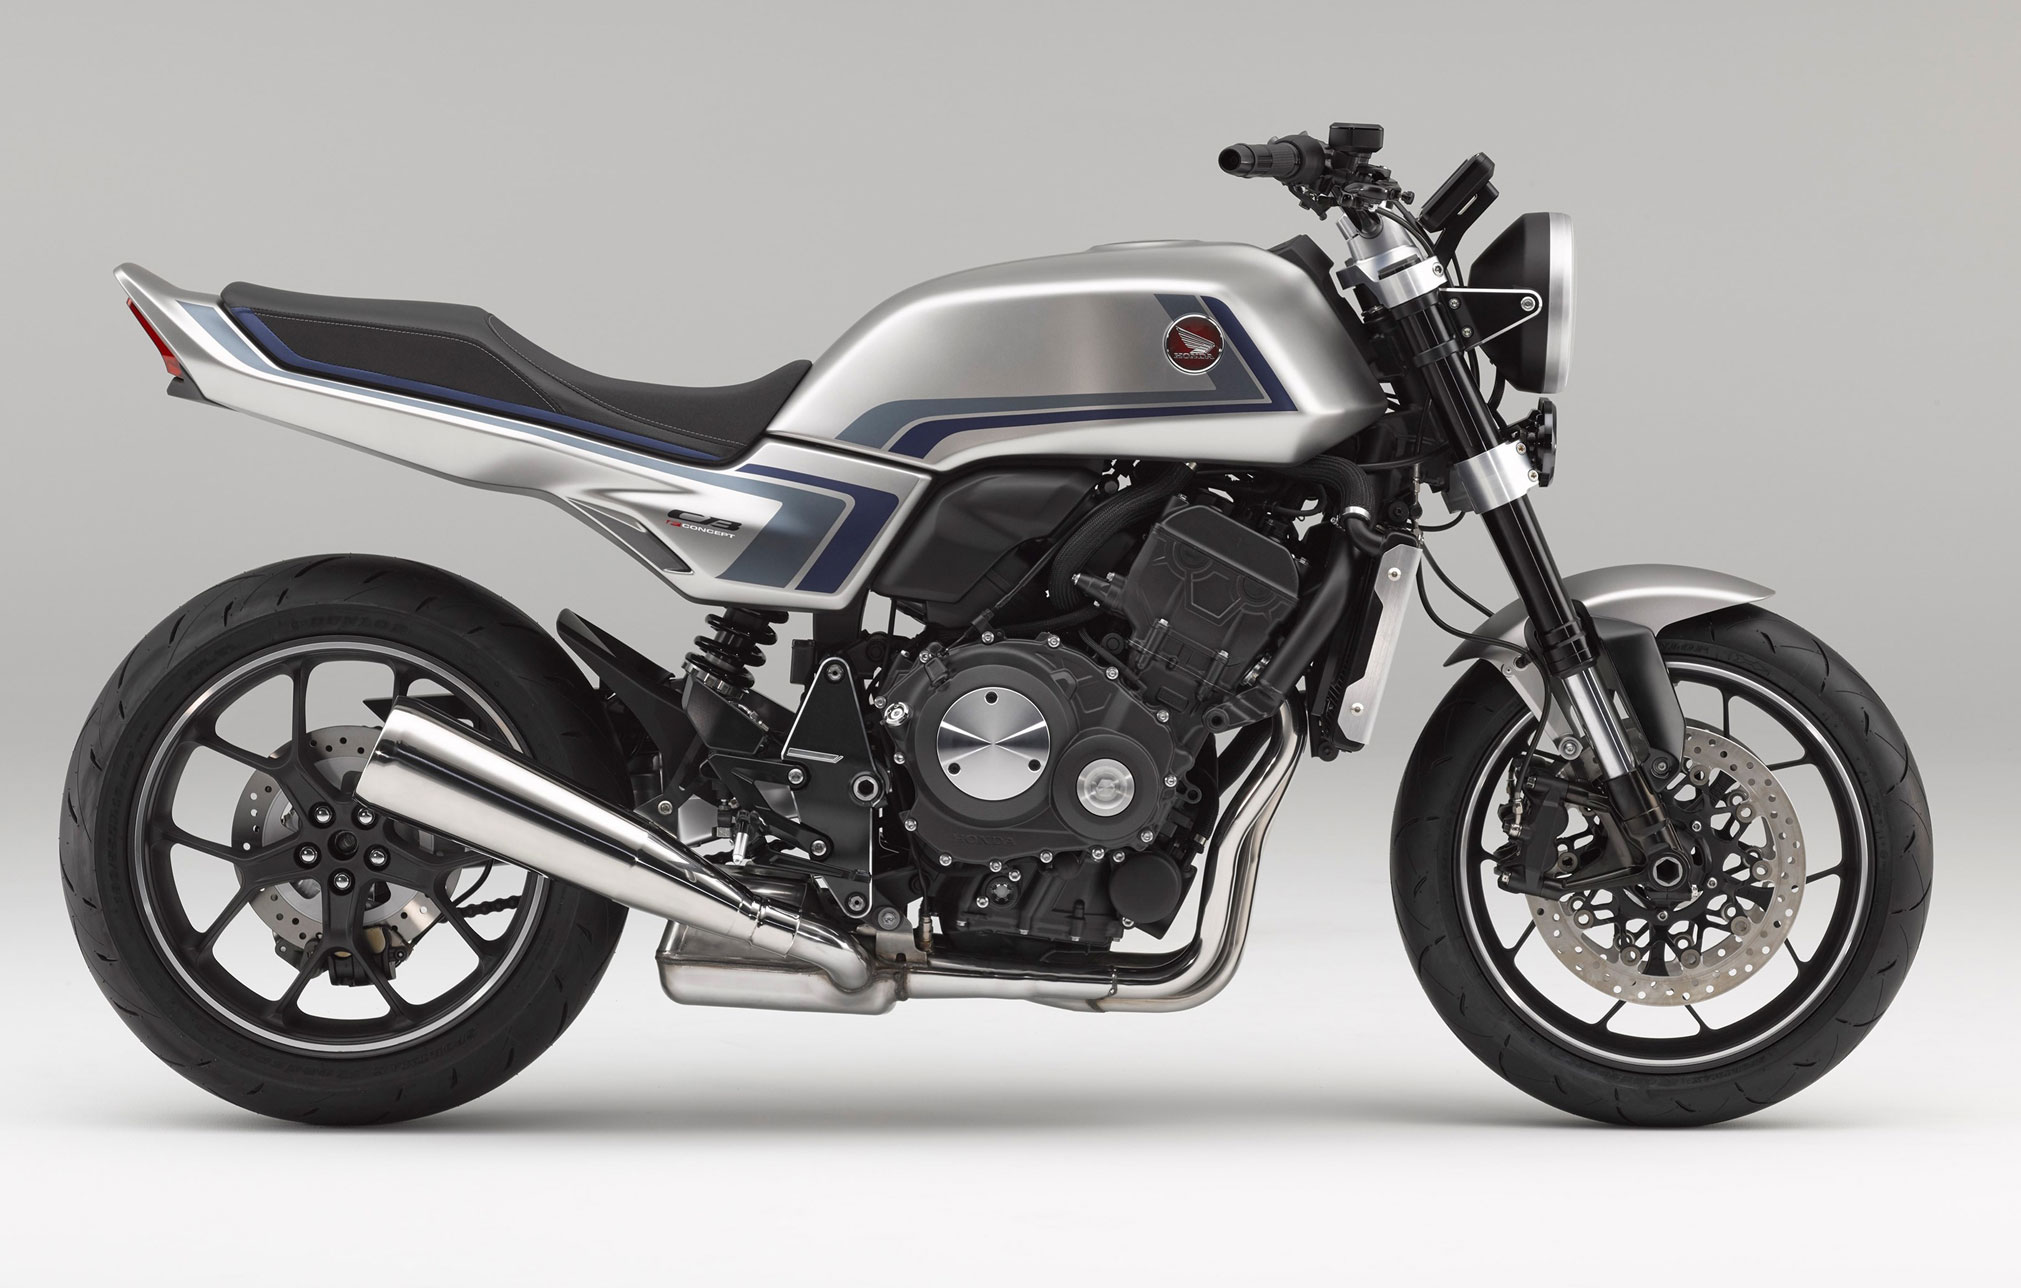 2021 Honda Motorcycle Guide Total Motorcycle